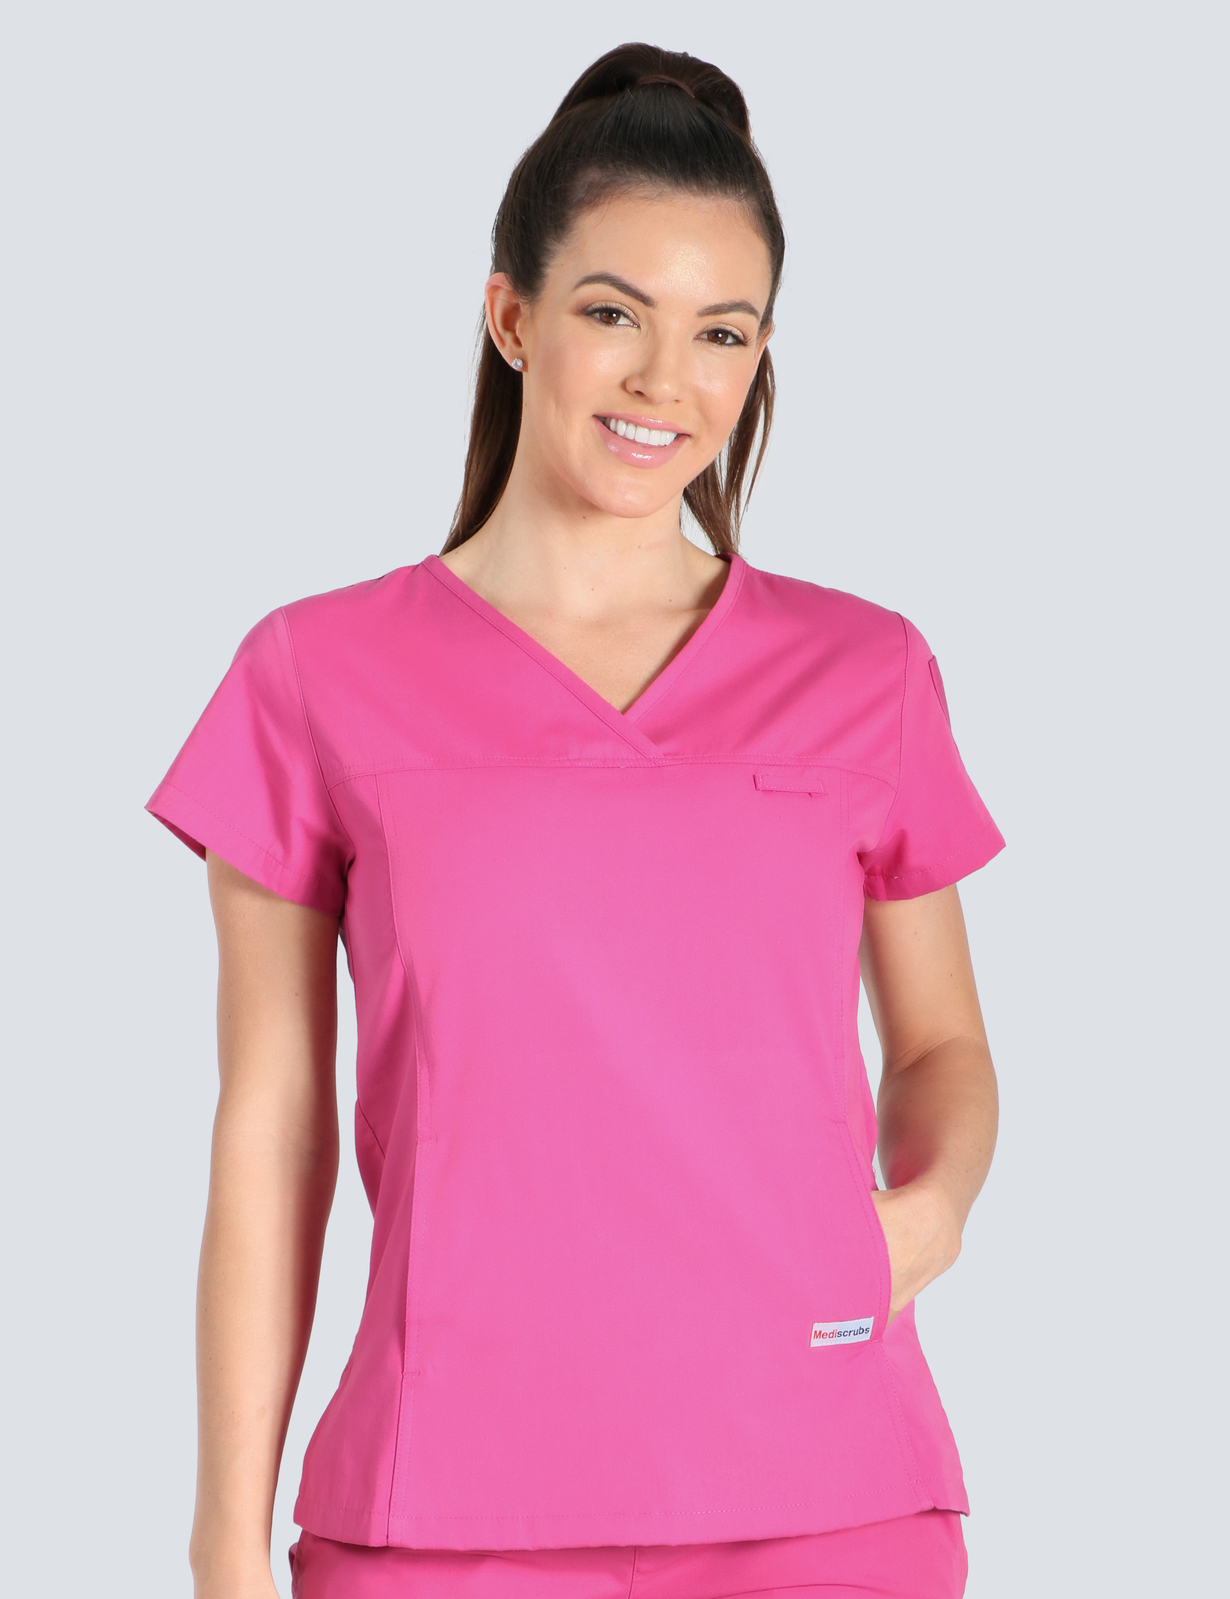 Queensland Children's Hospital Emergency Department Doctor Uniform Top Bundle (Women's Fit Top in Pink  incl Logos)